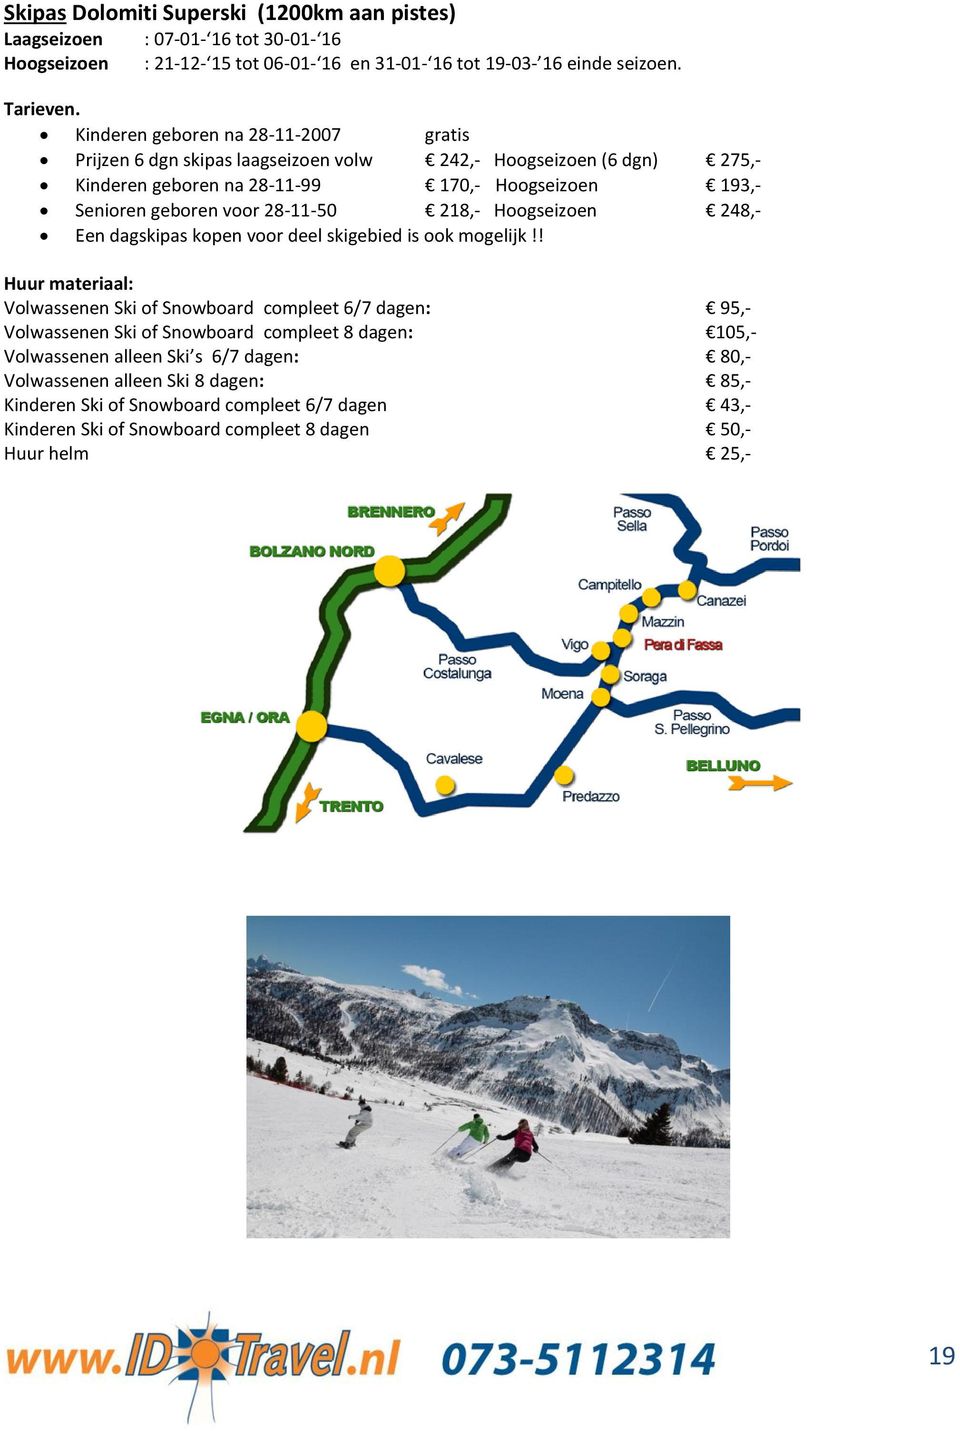 28-11-50 218,- Hoogseizoen 248,- Een dagskipas kopen voor deel skigebied is ook mogelijk!